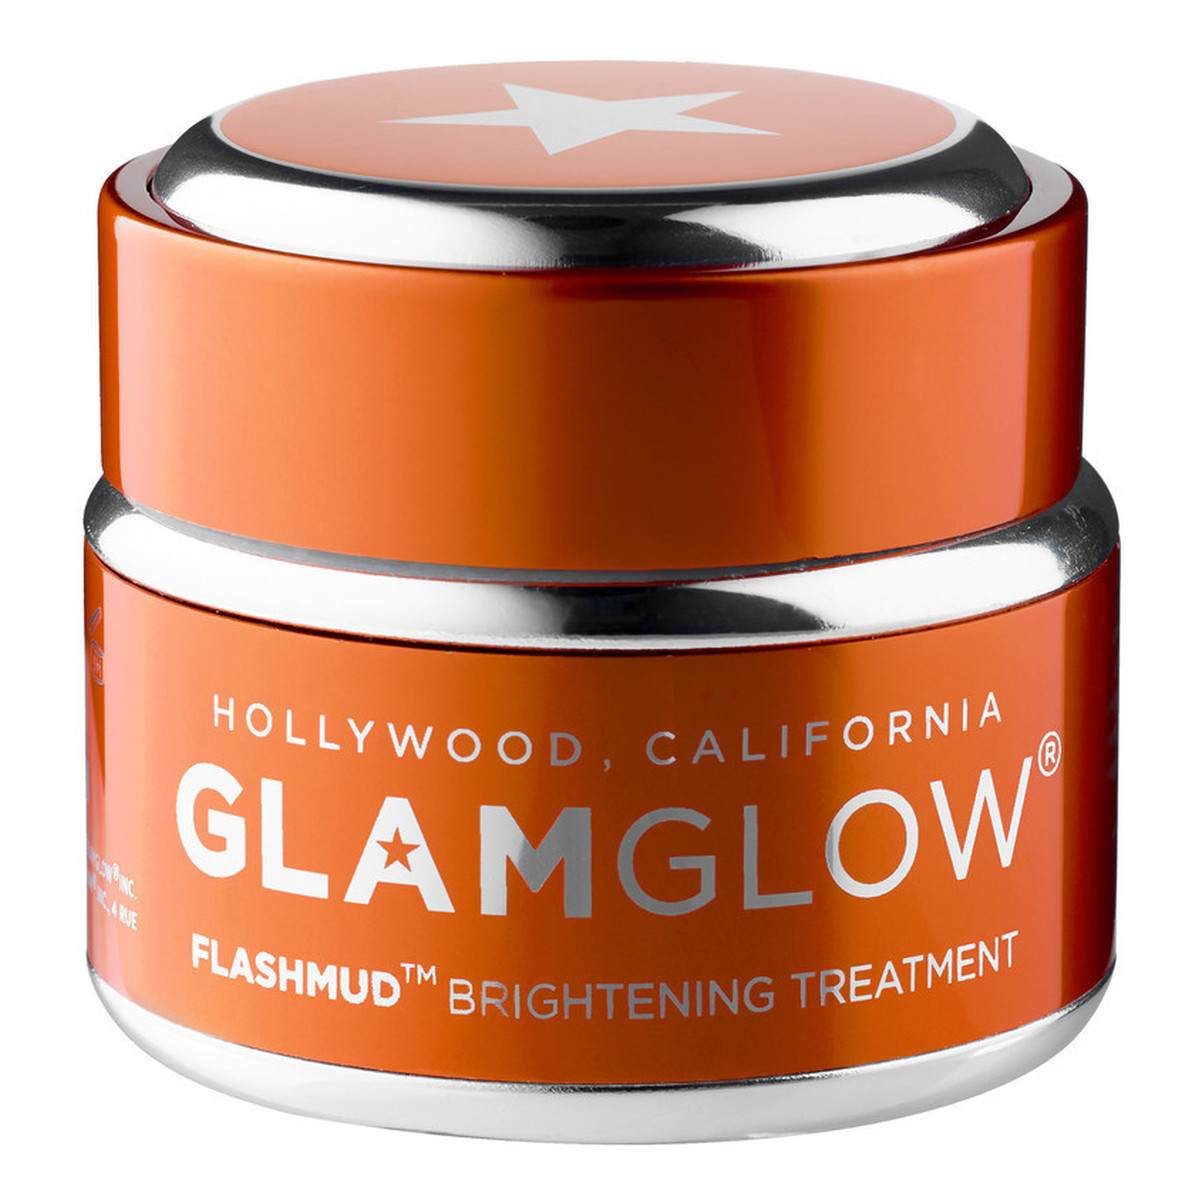 GlamGlow Flashmud Brightening Treatment Rozświetlająca maseczka do twarzy 15g